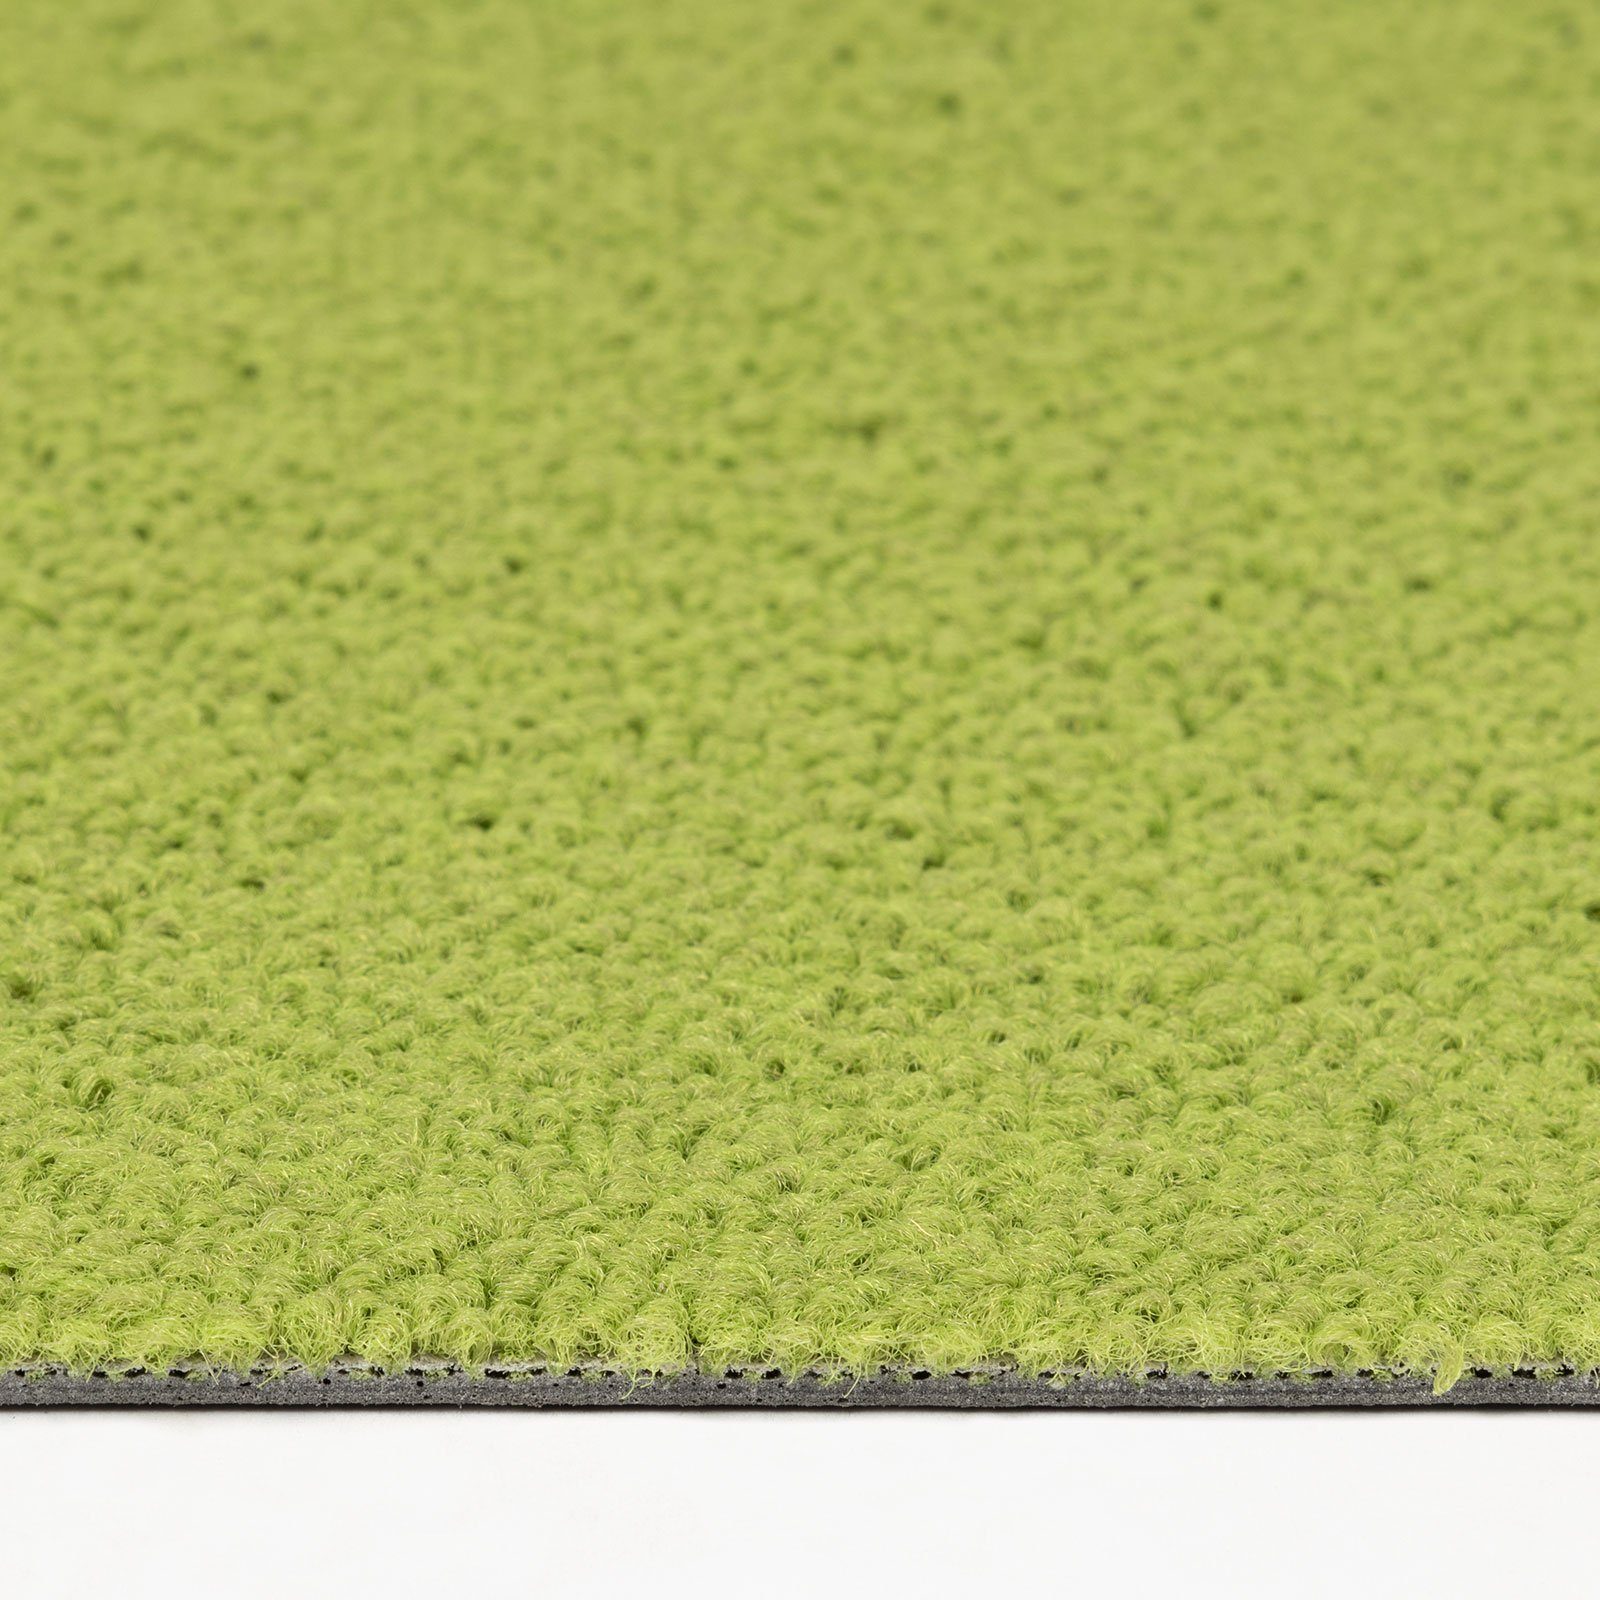 Fliese, Farben, 5.2 verschiedene Höhe: Grün Karat, 50x50 cm, Nottingham, Teppichfliese mm Bodenschutz,